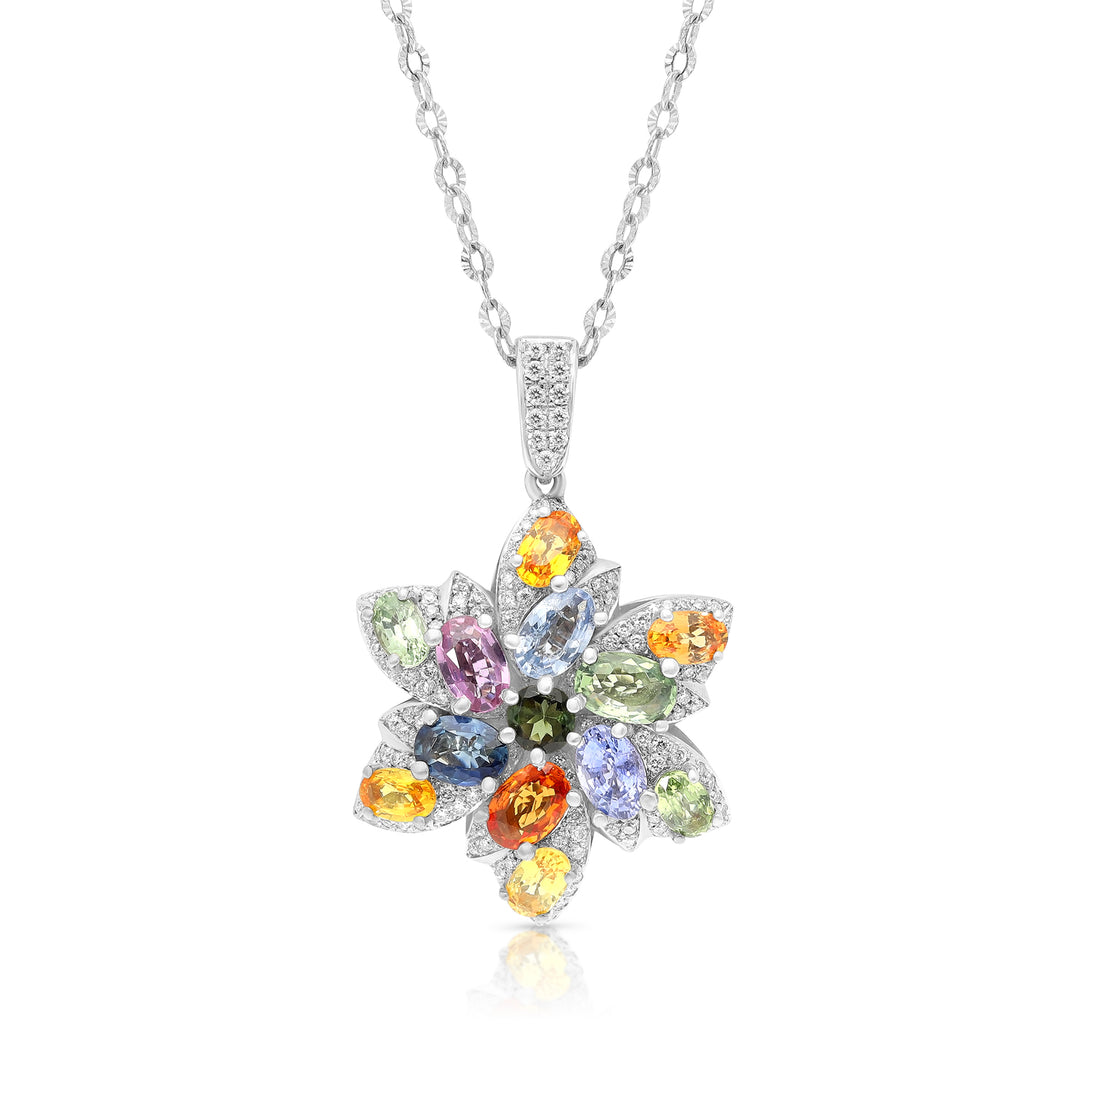 Multi Color Sapphire Flower Shaped Pendant Necklace - 5.5 Carat